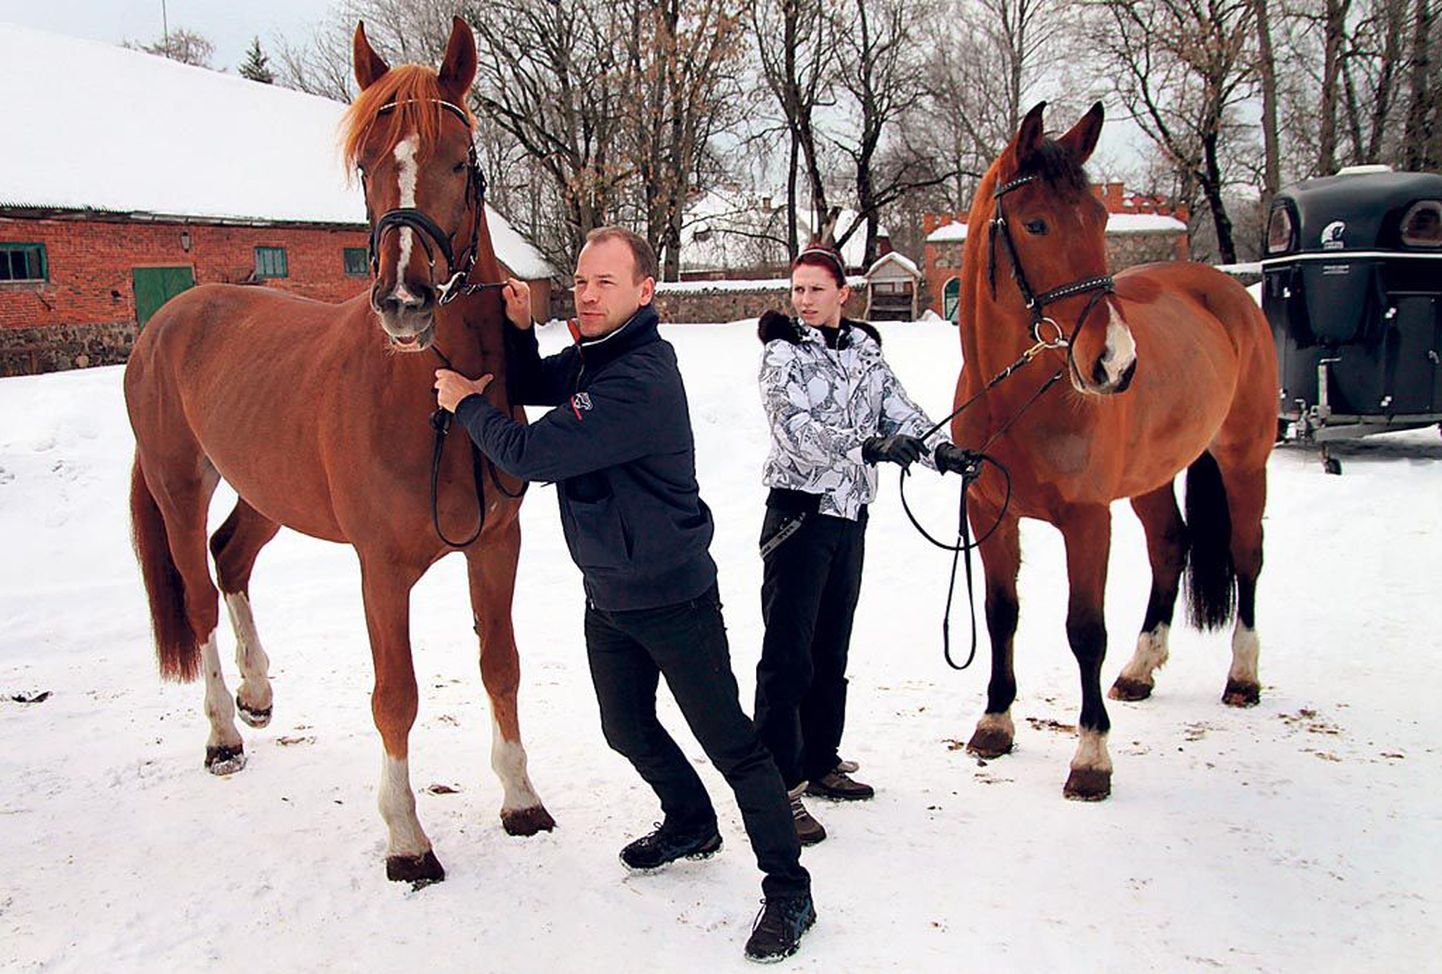 Tori hobusekasvanduse juhataja Imre Sams tõi talliõuele täku Praosti ja ratsasportlane Sandra Prez mära Linoldy, et näidata universaalset tüüpi Tori hobuseid.